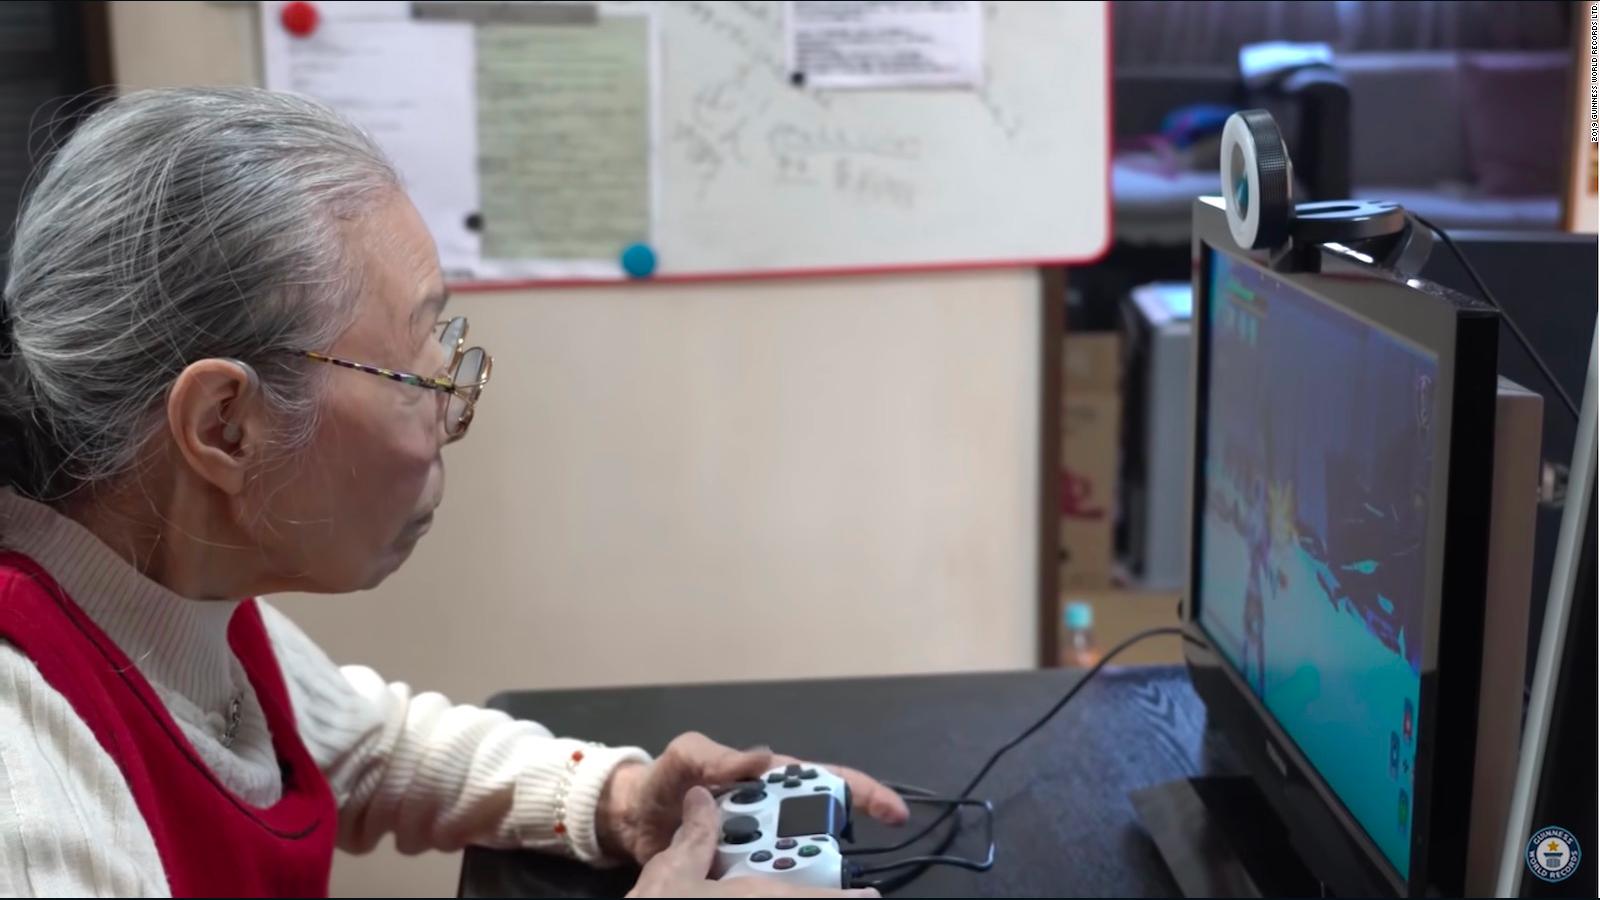 Japonesa De 90 Anos Es La Gamer Mas Longeva Del Mundo Video Cnn - jugando en directo con ustedes roblox mis gamers